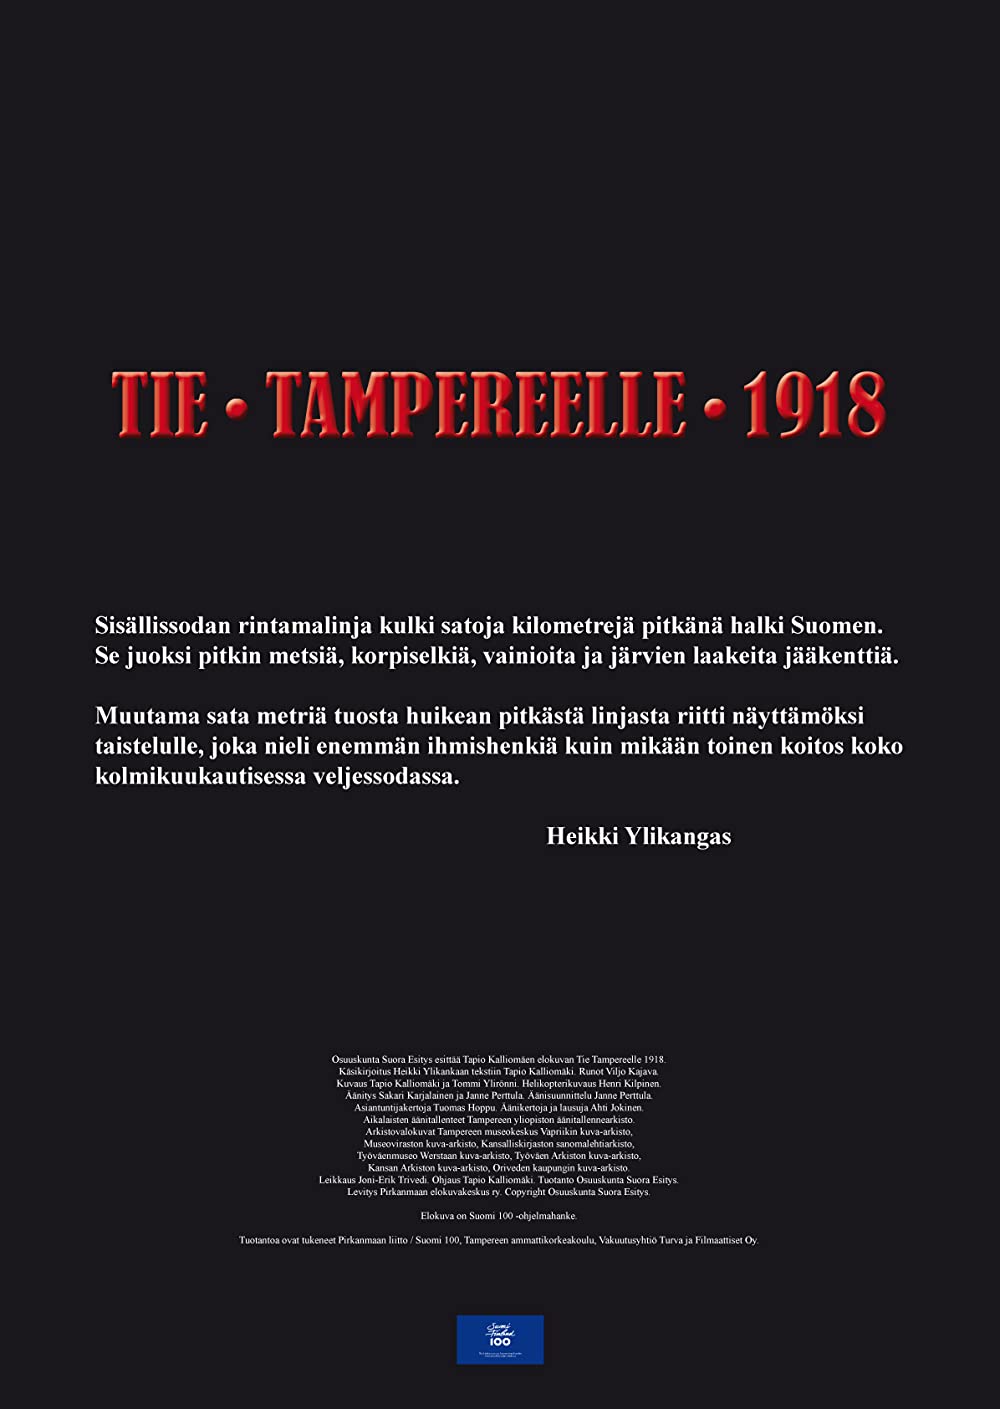 Tie Tampereelle 1918 -dokumenttielokuva